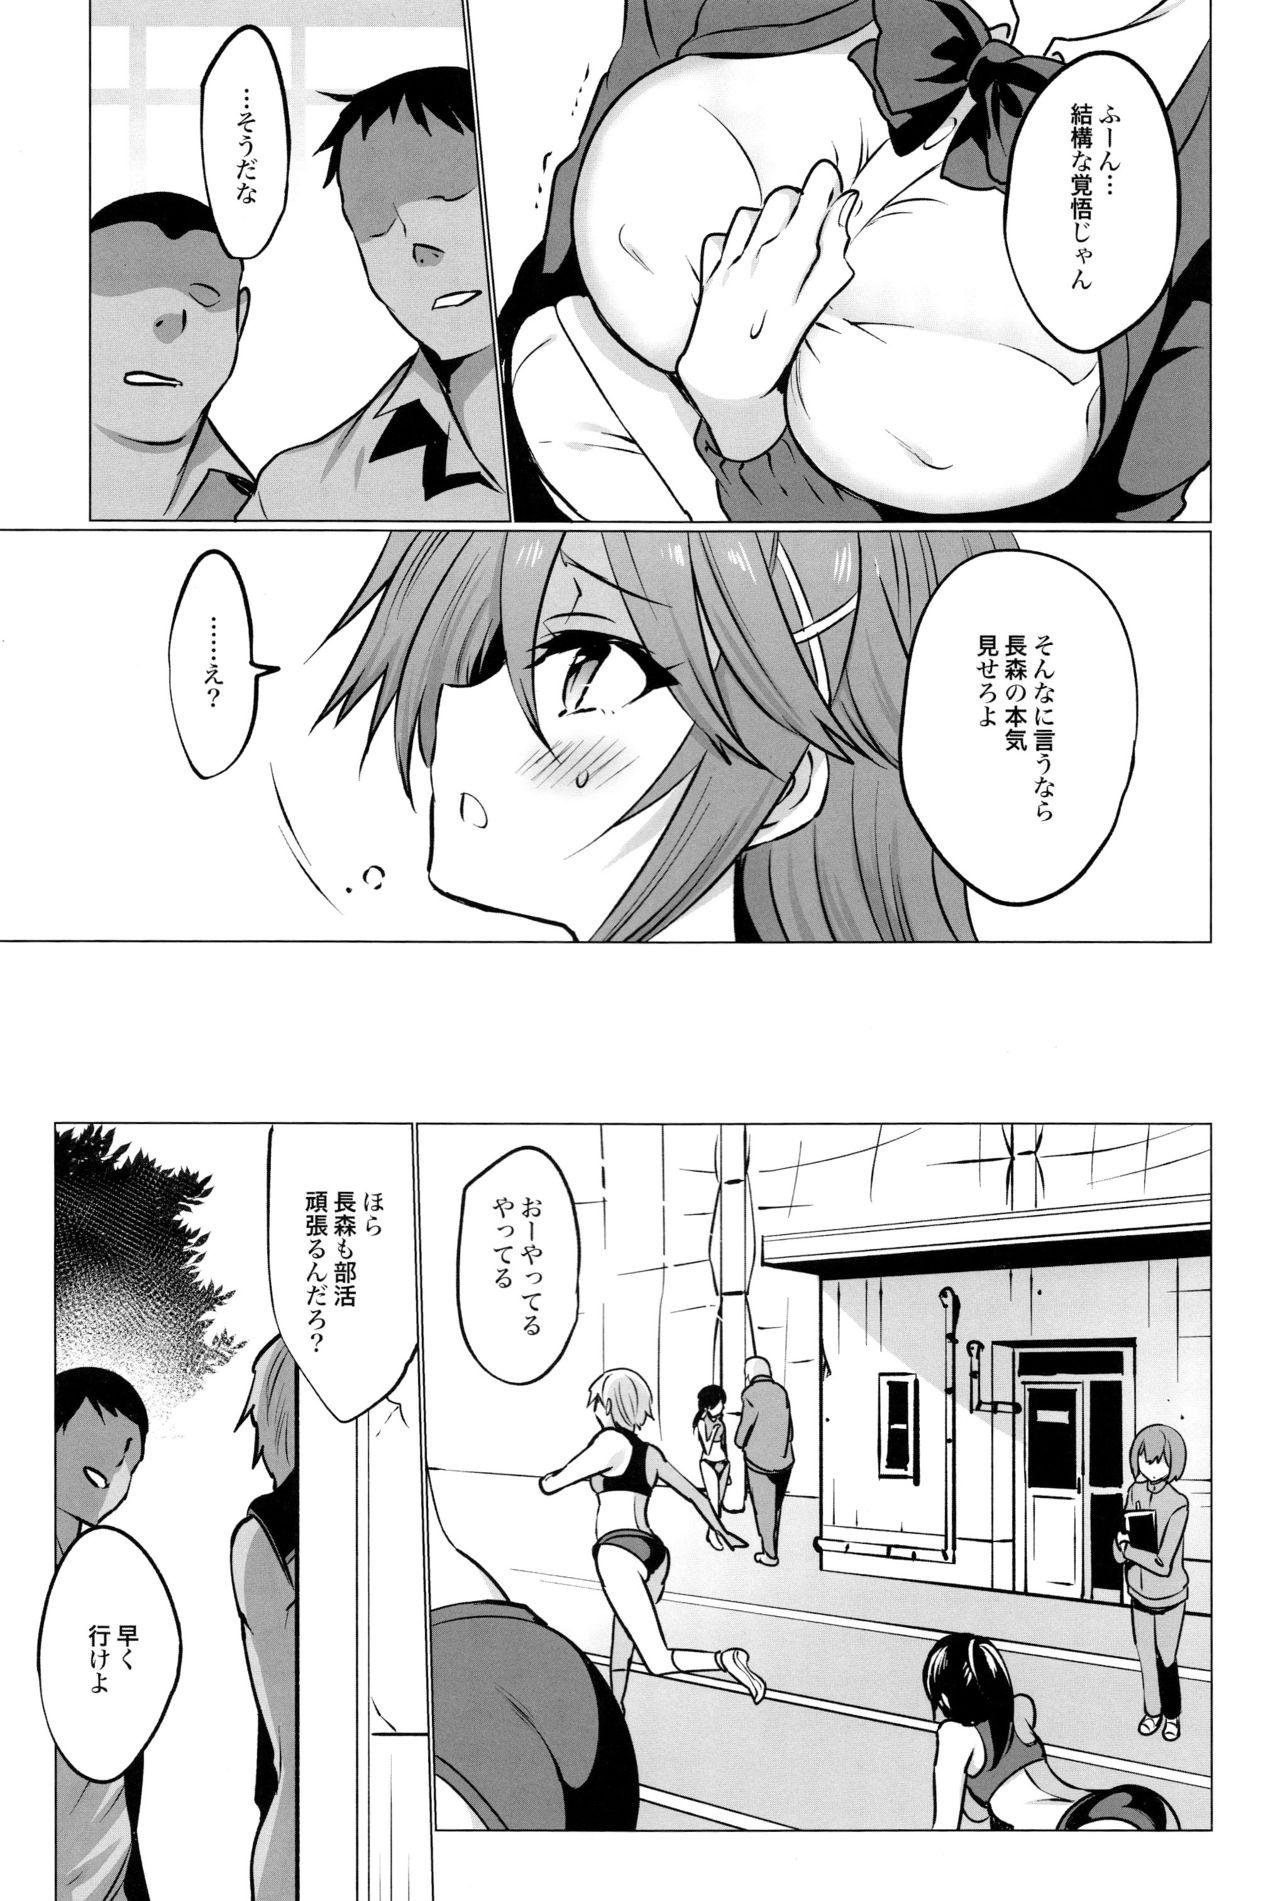 Harcore Gakkou de Seishun! 16 - Original Teen - Page 7